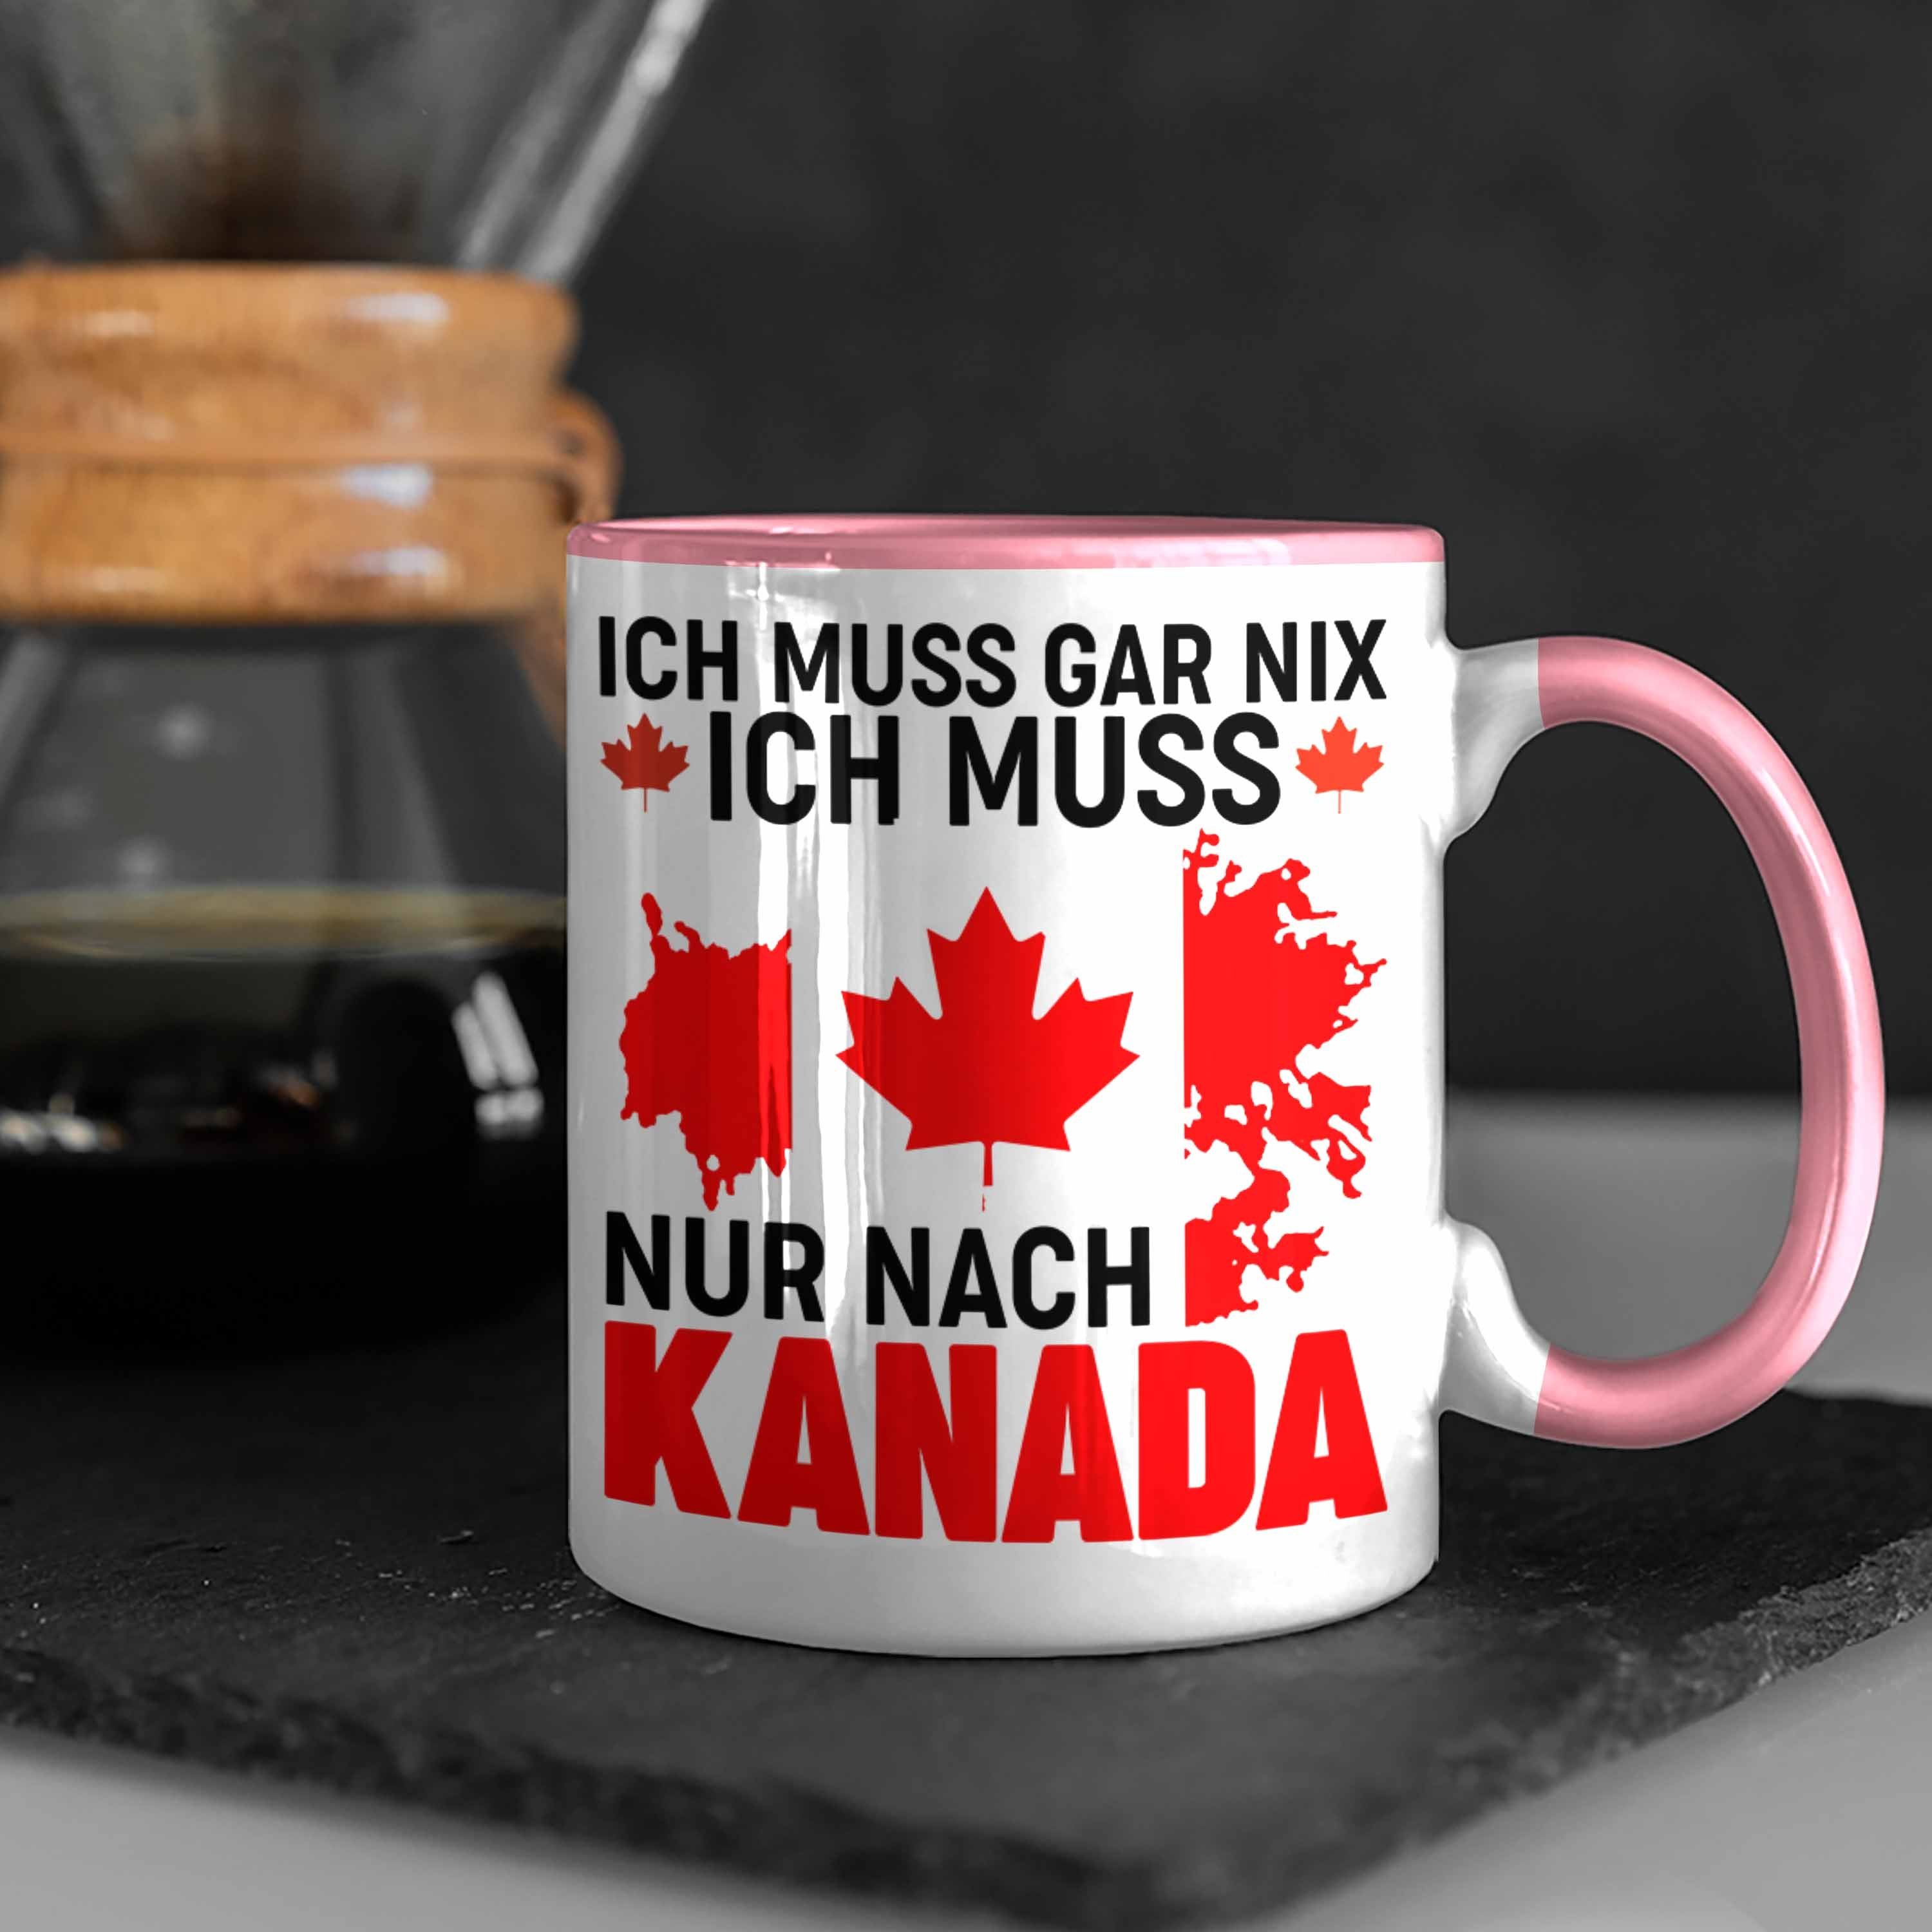 Trendation Rosa - Geschenk Tasse Tasse Nach Muss Nix Kanada Auslandsjahr Ich Geschenkidee Trendation Kanada Reise Muss Gar Nur Ich